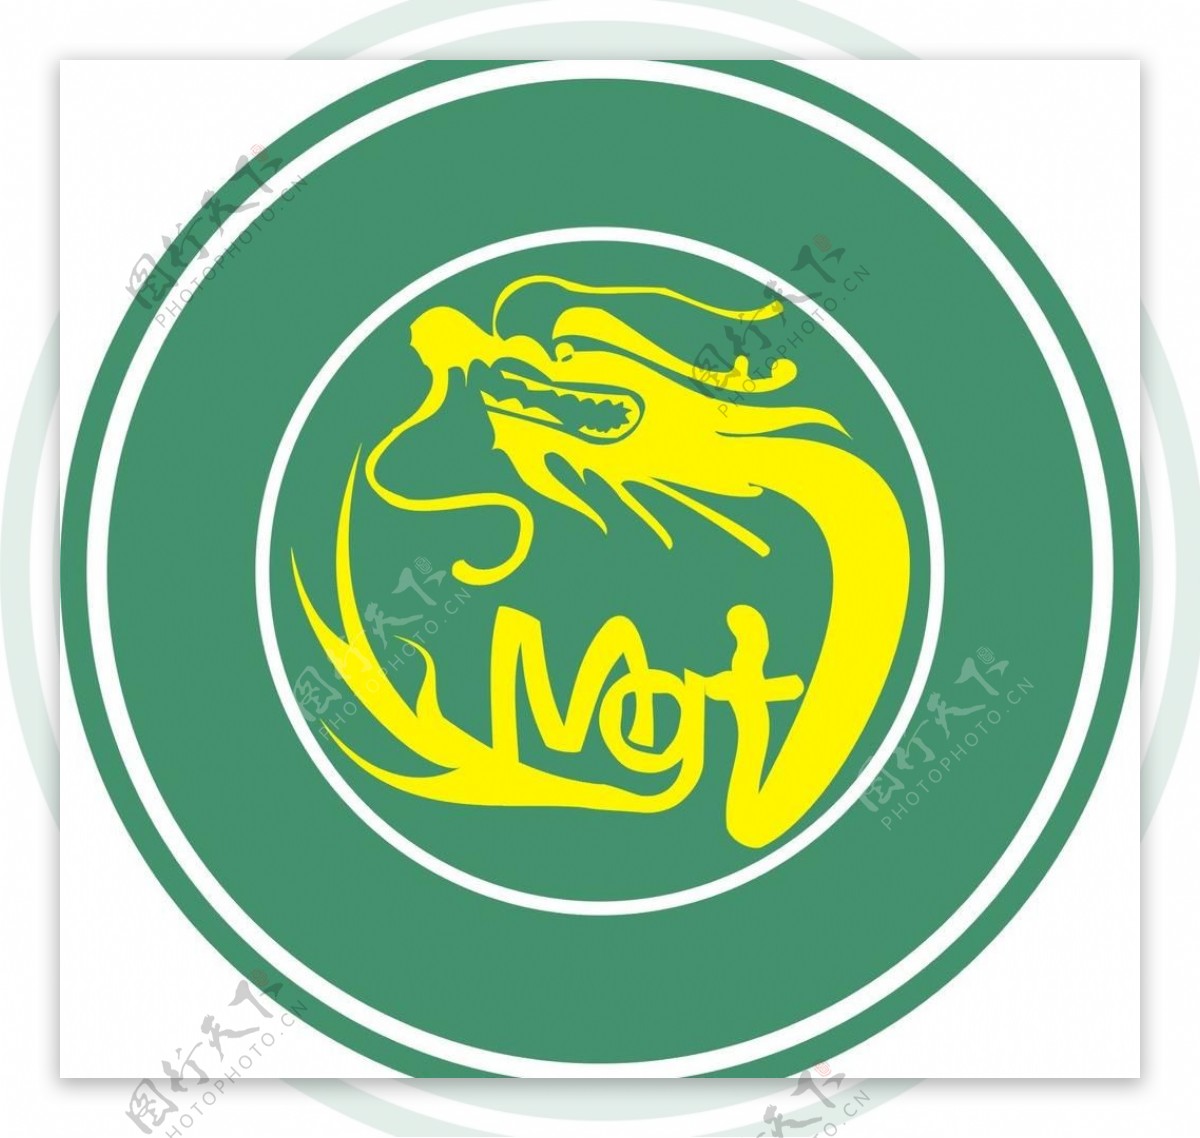 艺术龙logo图片